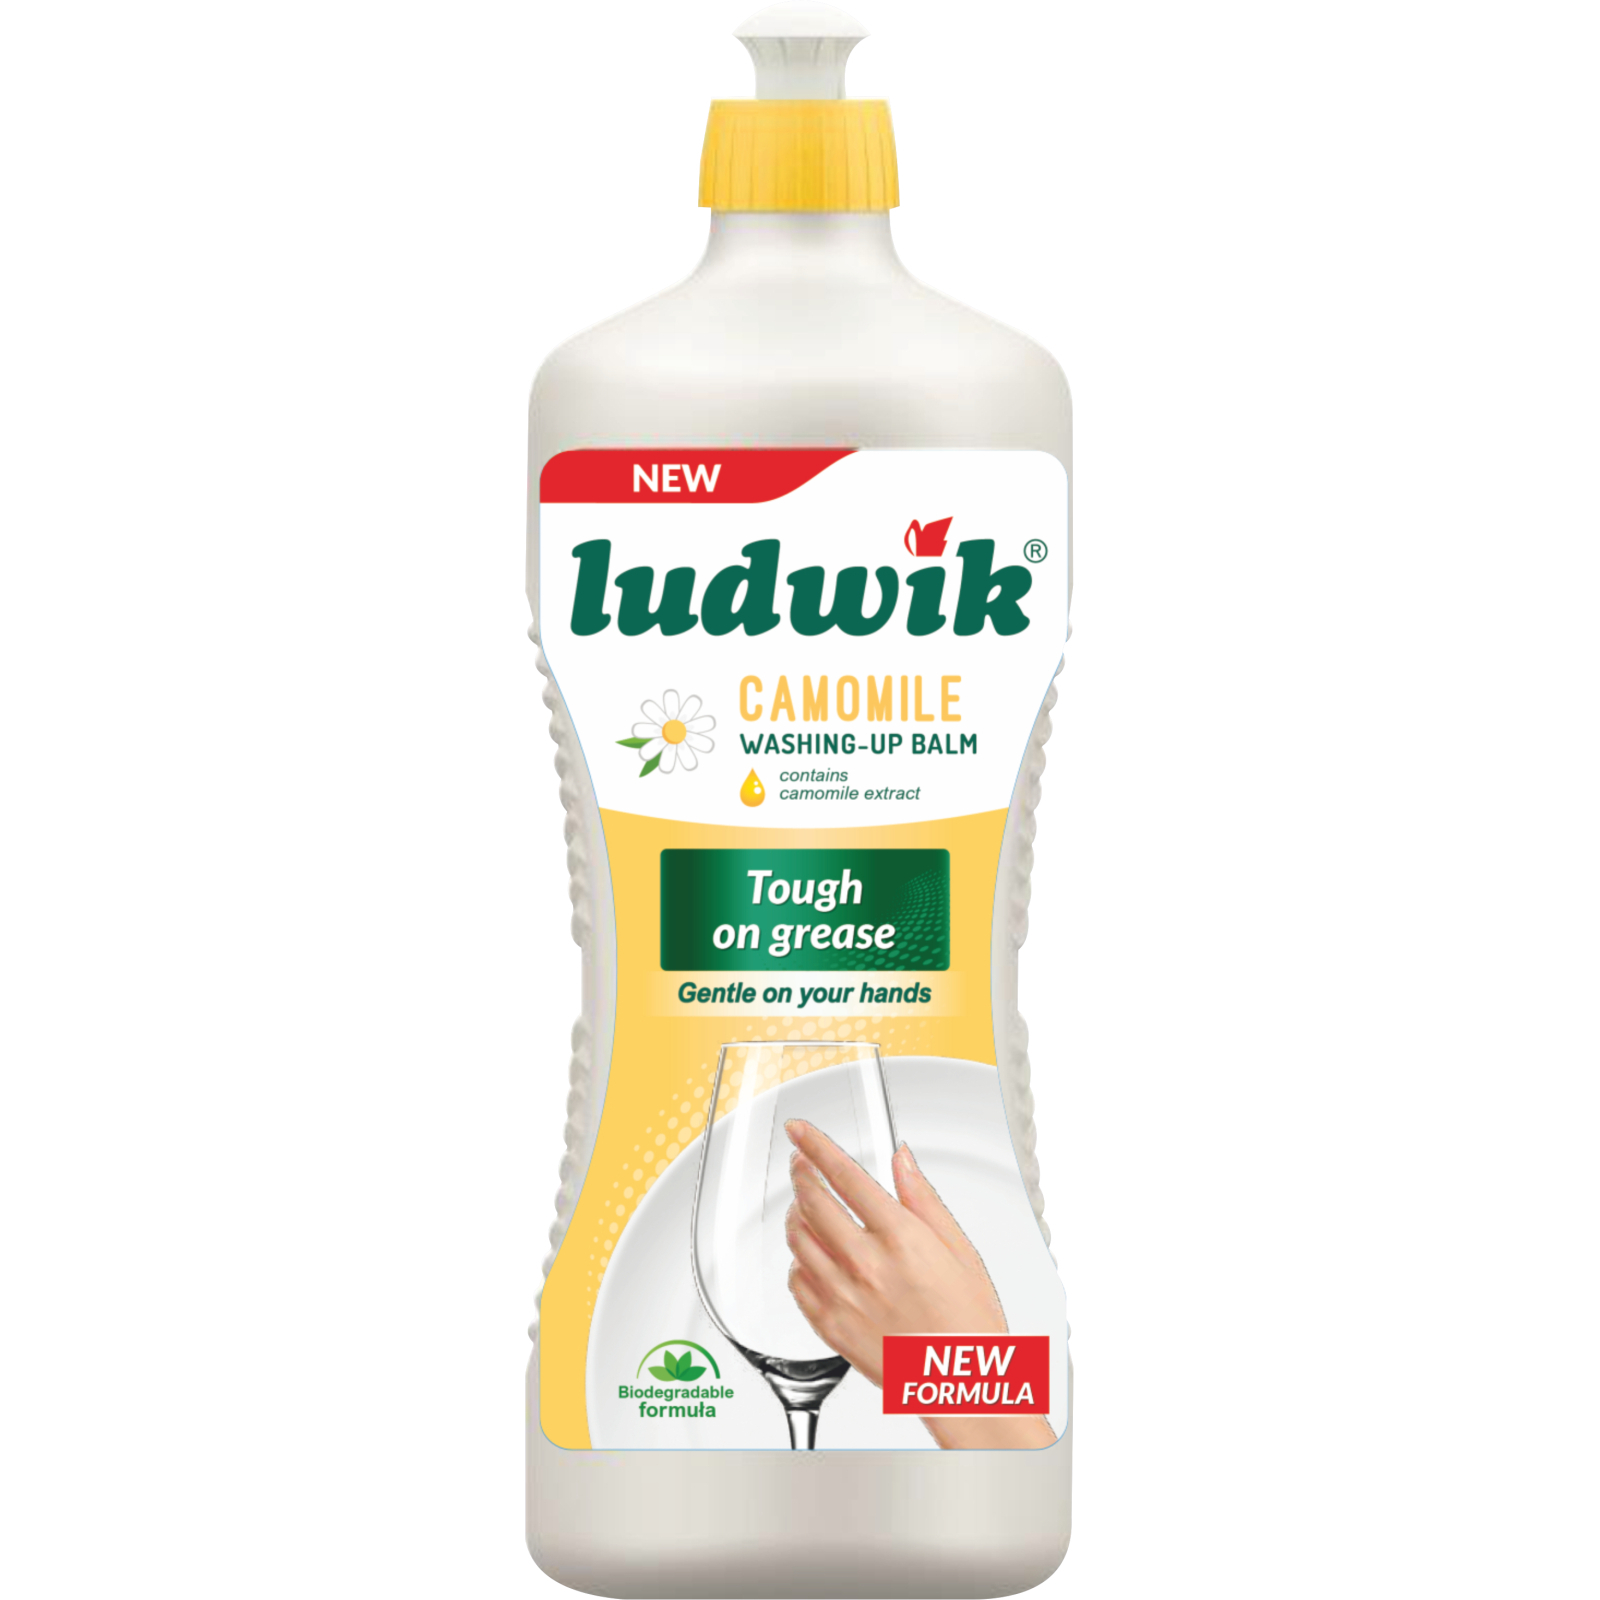 Средство для ручного мытья посуды Ludwik с экстрактом ромашки 450 г (5900498029017)